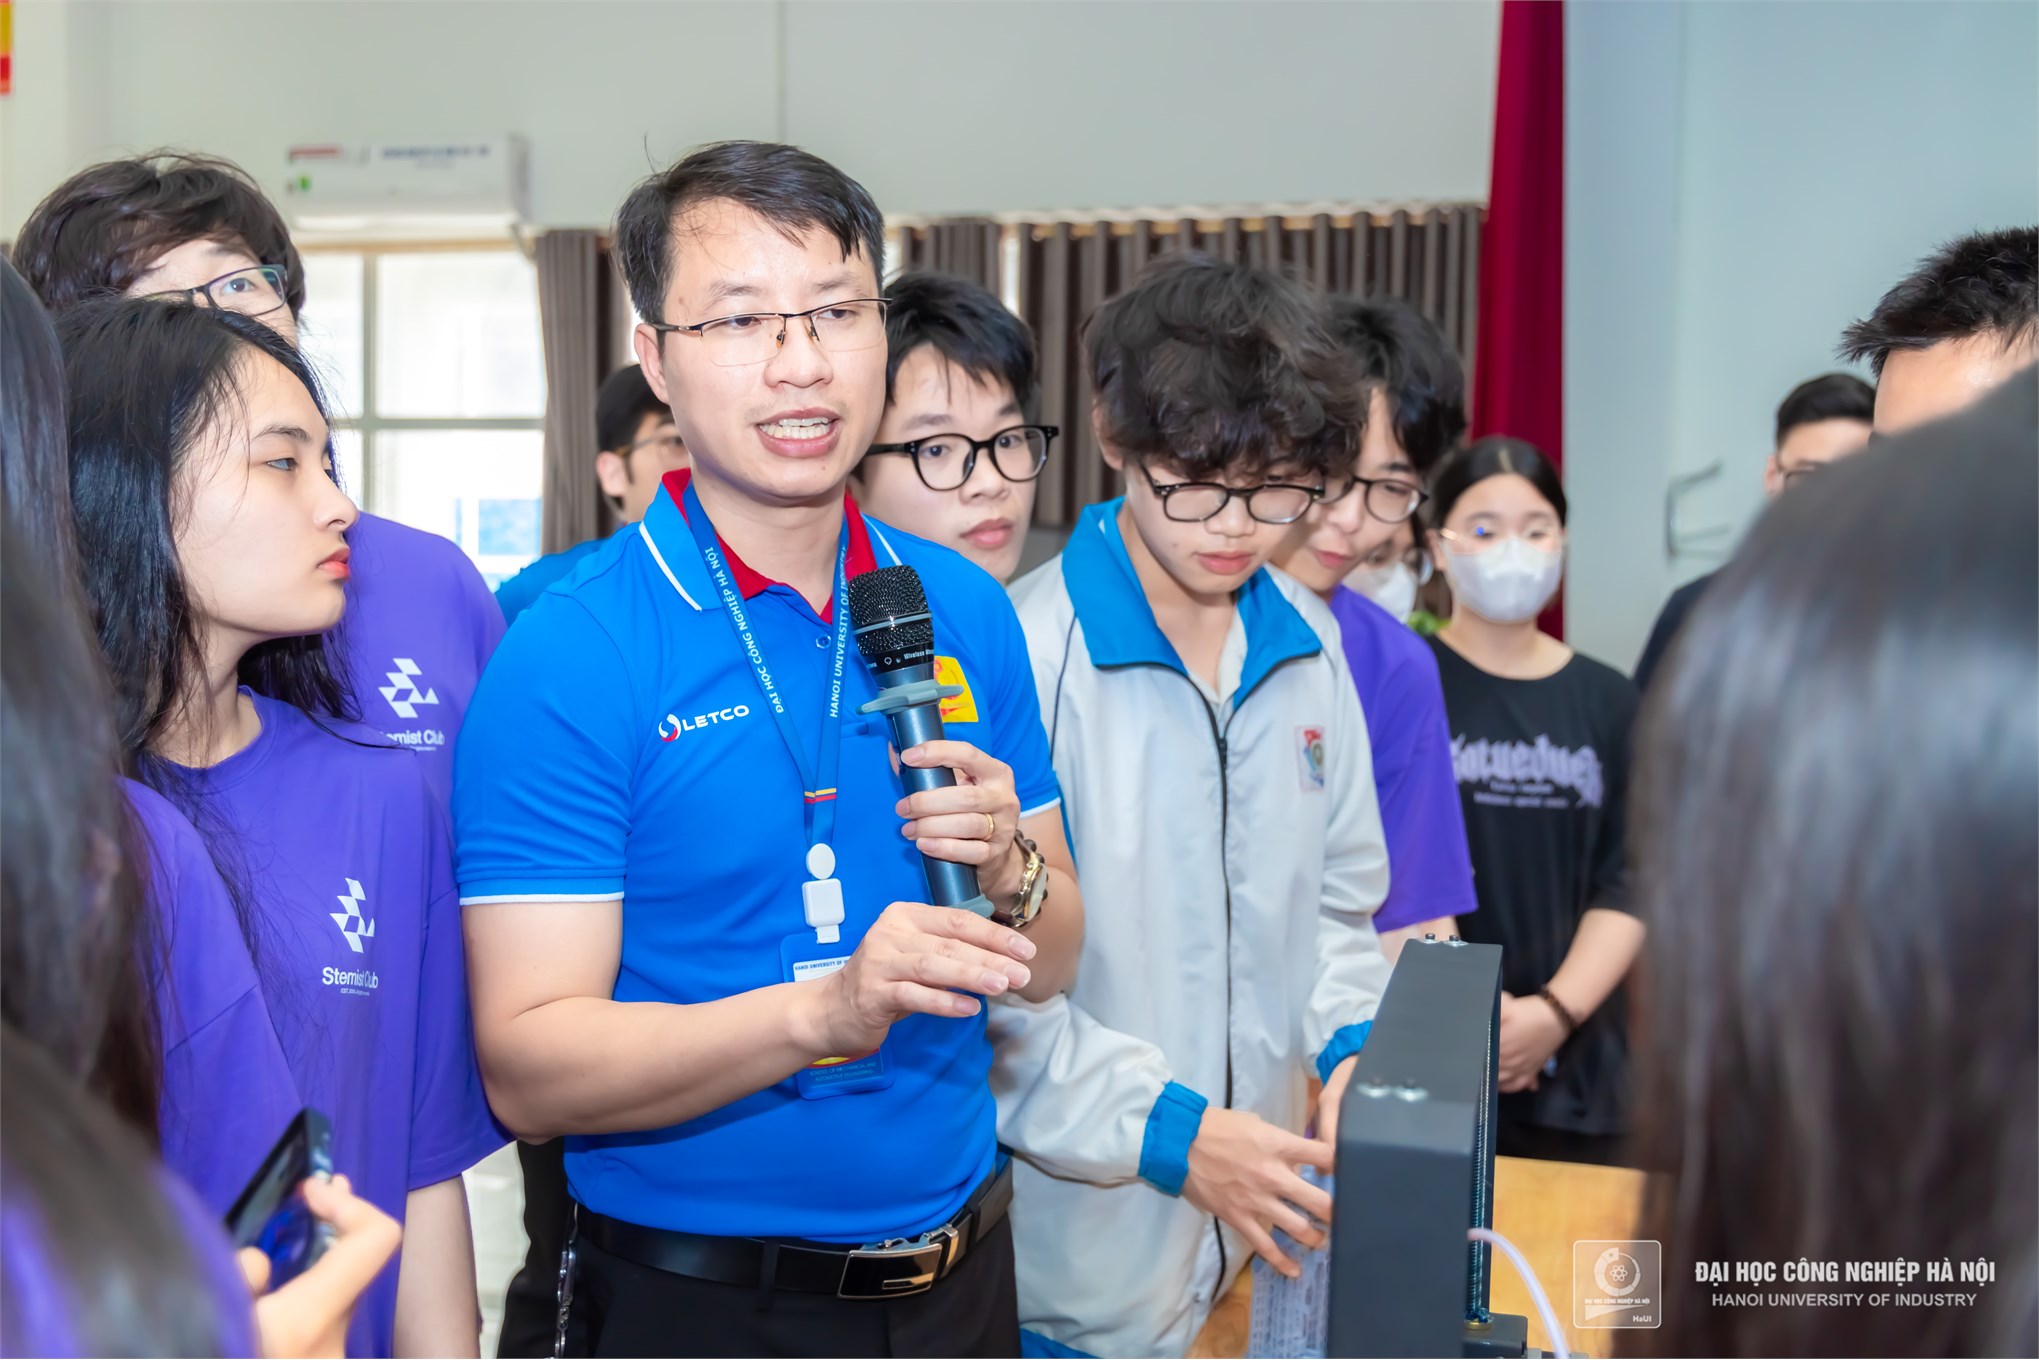 Trường Cơ khí - Ô tô, Đại học Công nghiệp Hà Nội ươm mầm tài năng khoa học công nghệ từ giáo dục STEM